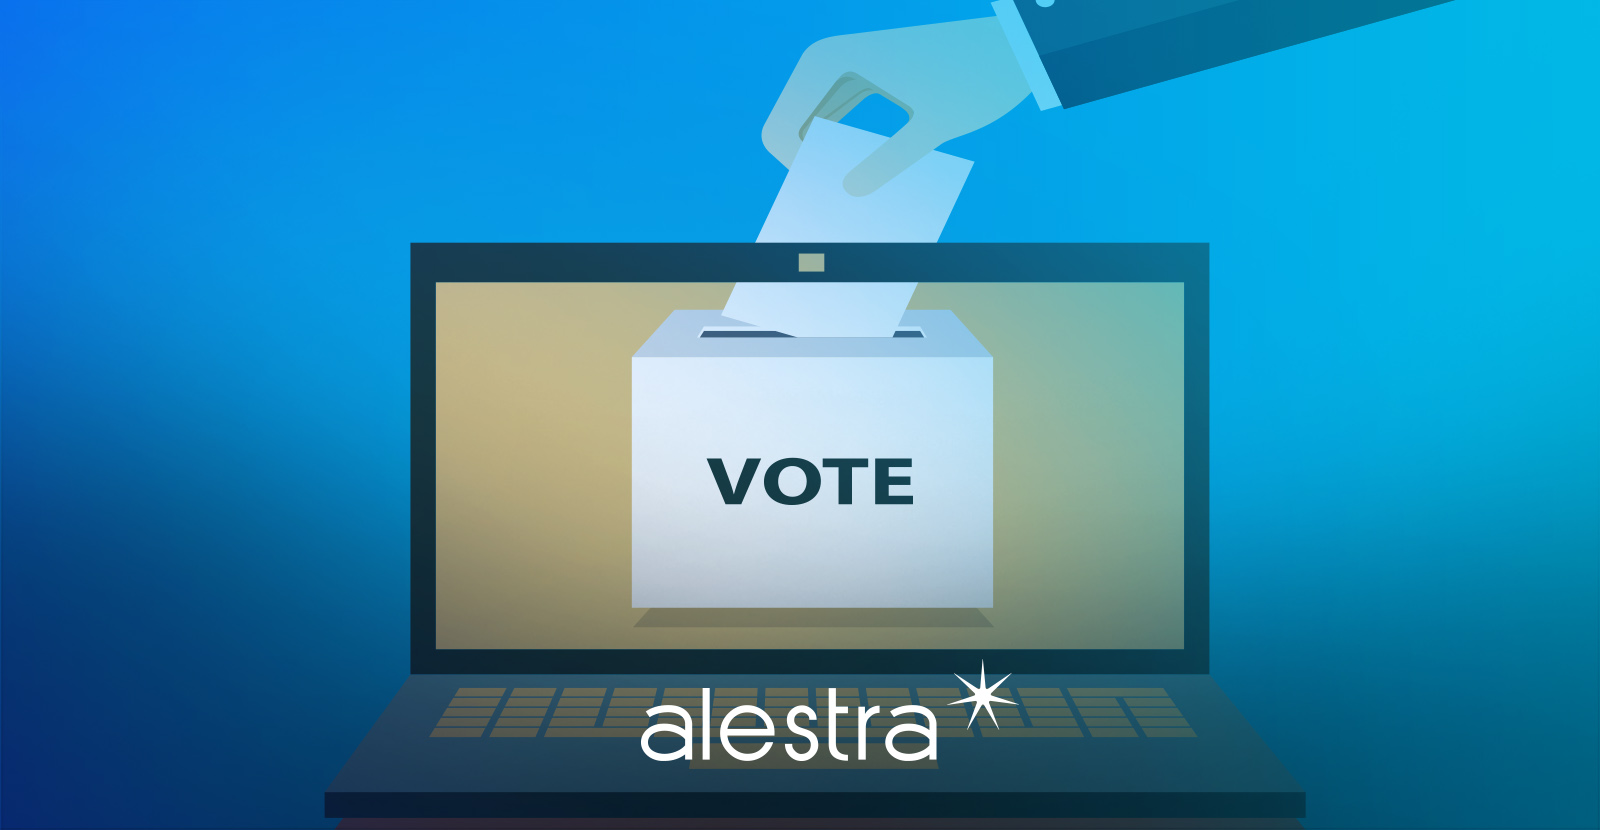 Concepto gráfico de votación en línea que demuestra la importancia de la ciberseguridad en las elecciones